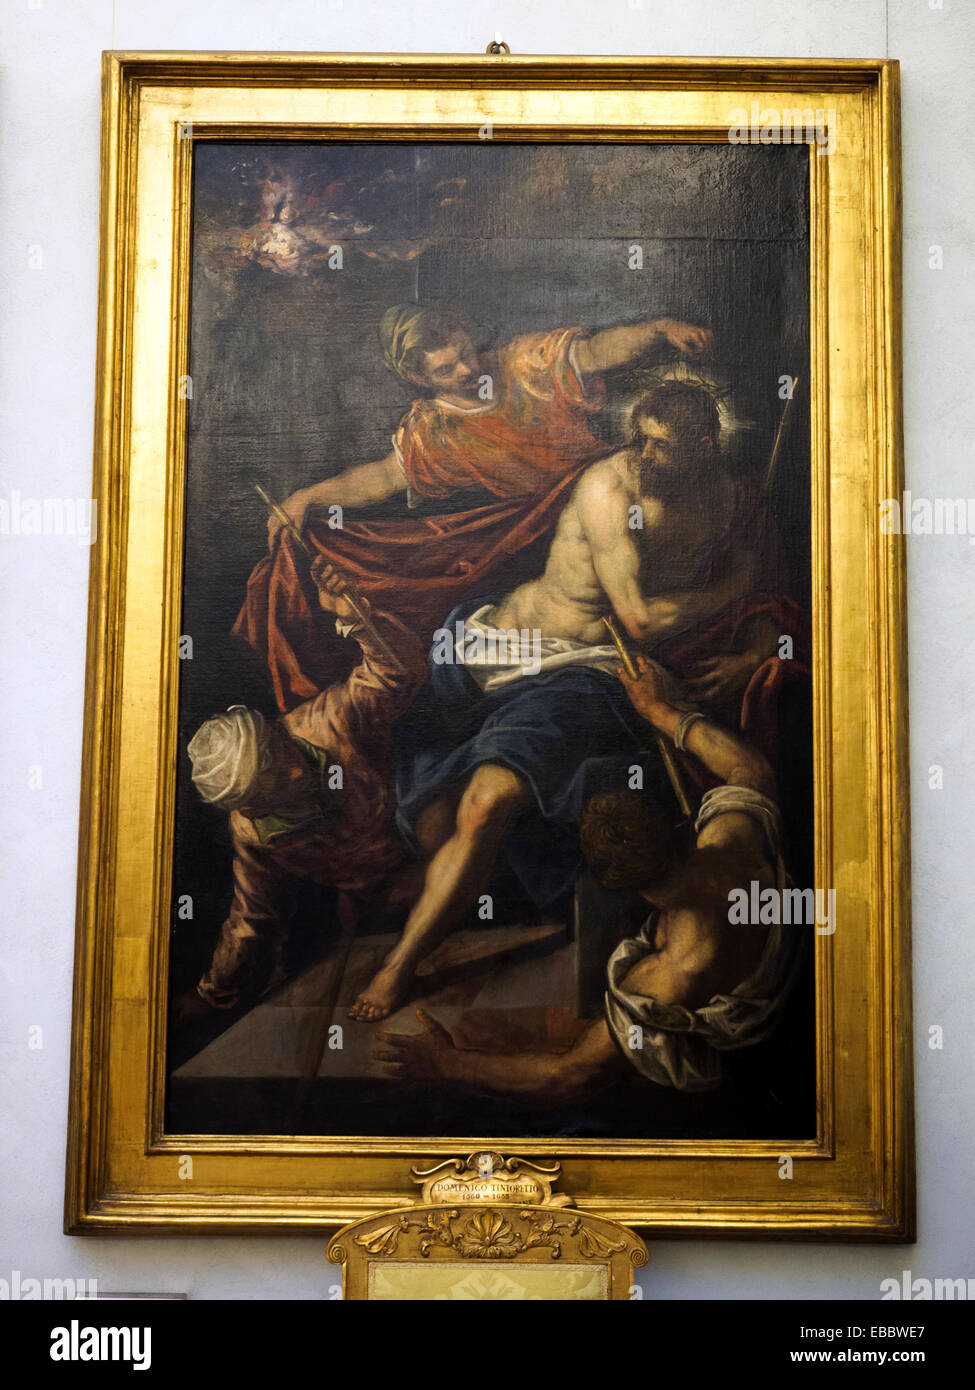 Domenico Tintoretto (Domenico Robusti, Venezia 1560 - Venezia 1635) Coronazione di spine (Christ Crowned with Thorns) Oil on Canvas Musei Capitolini - Rome, Italy Stock Photo